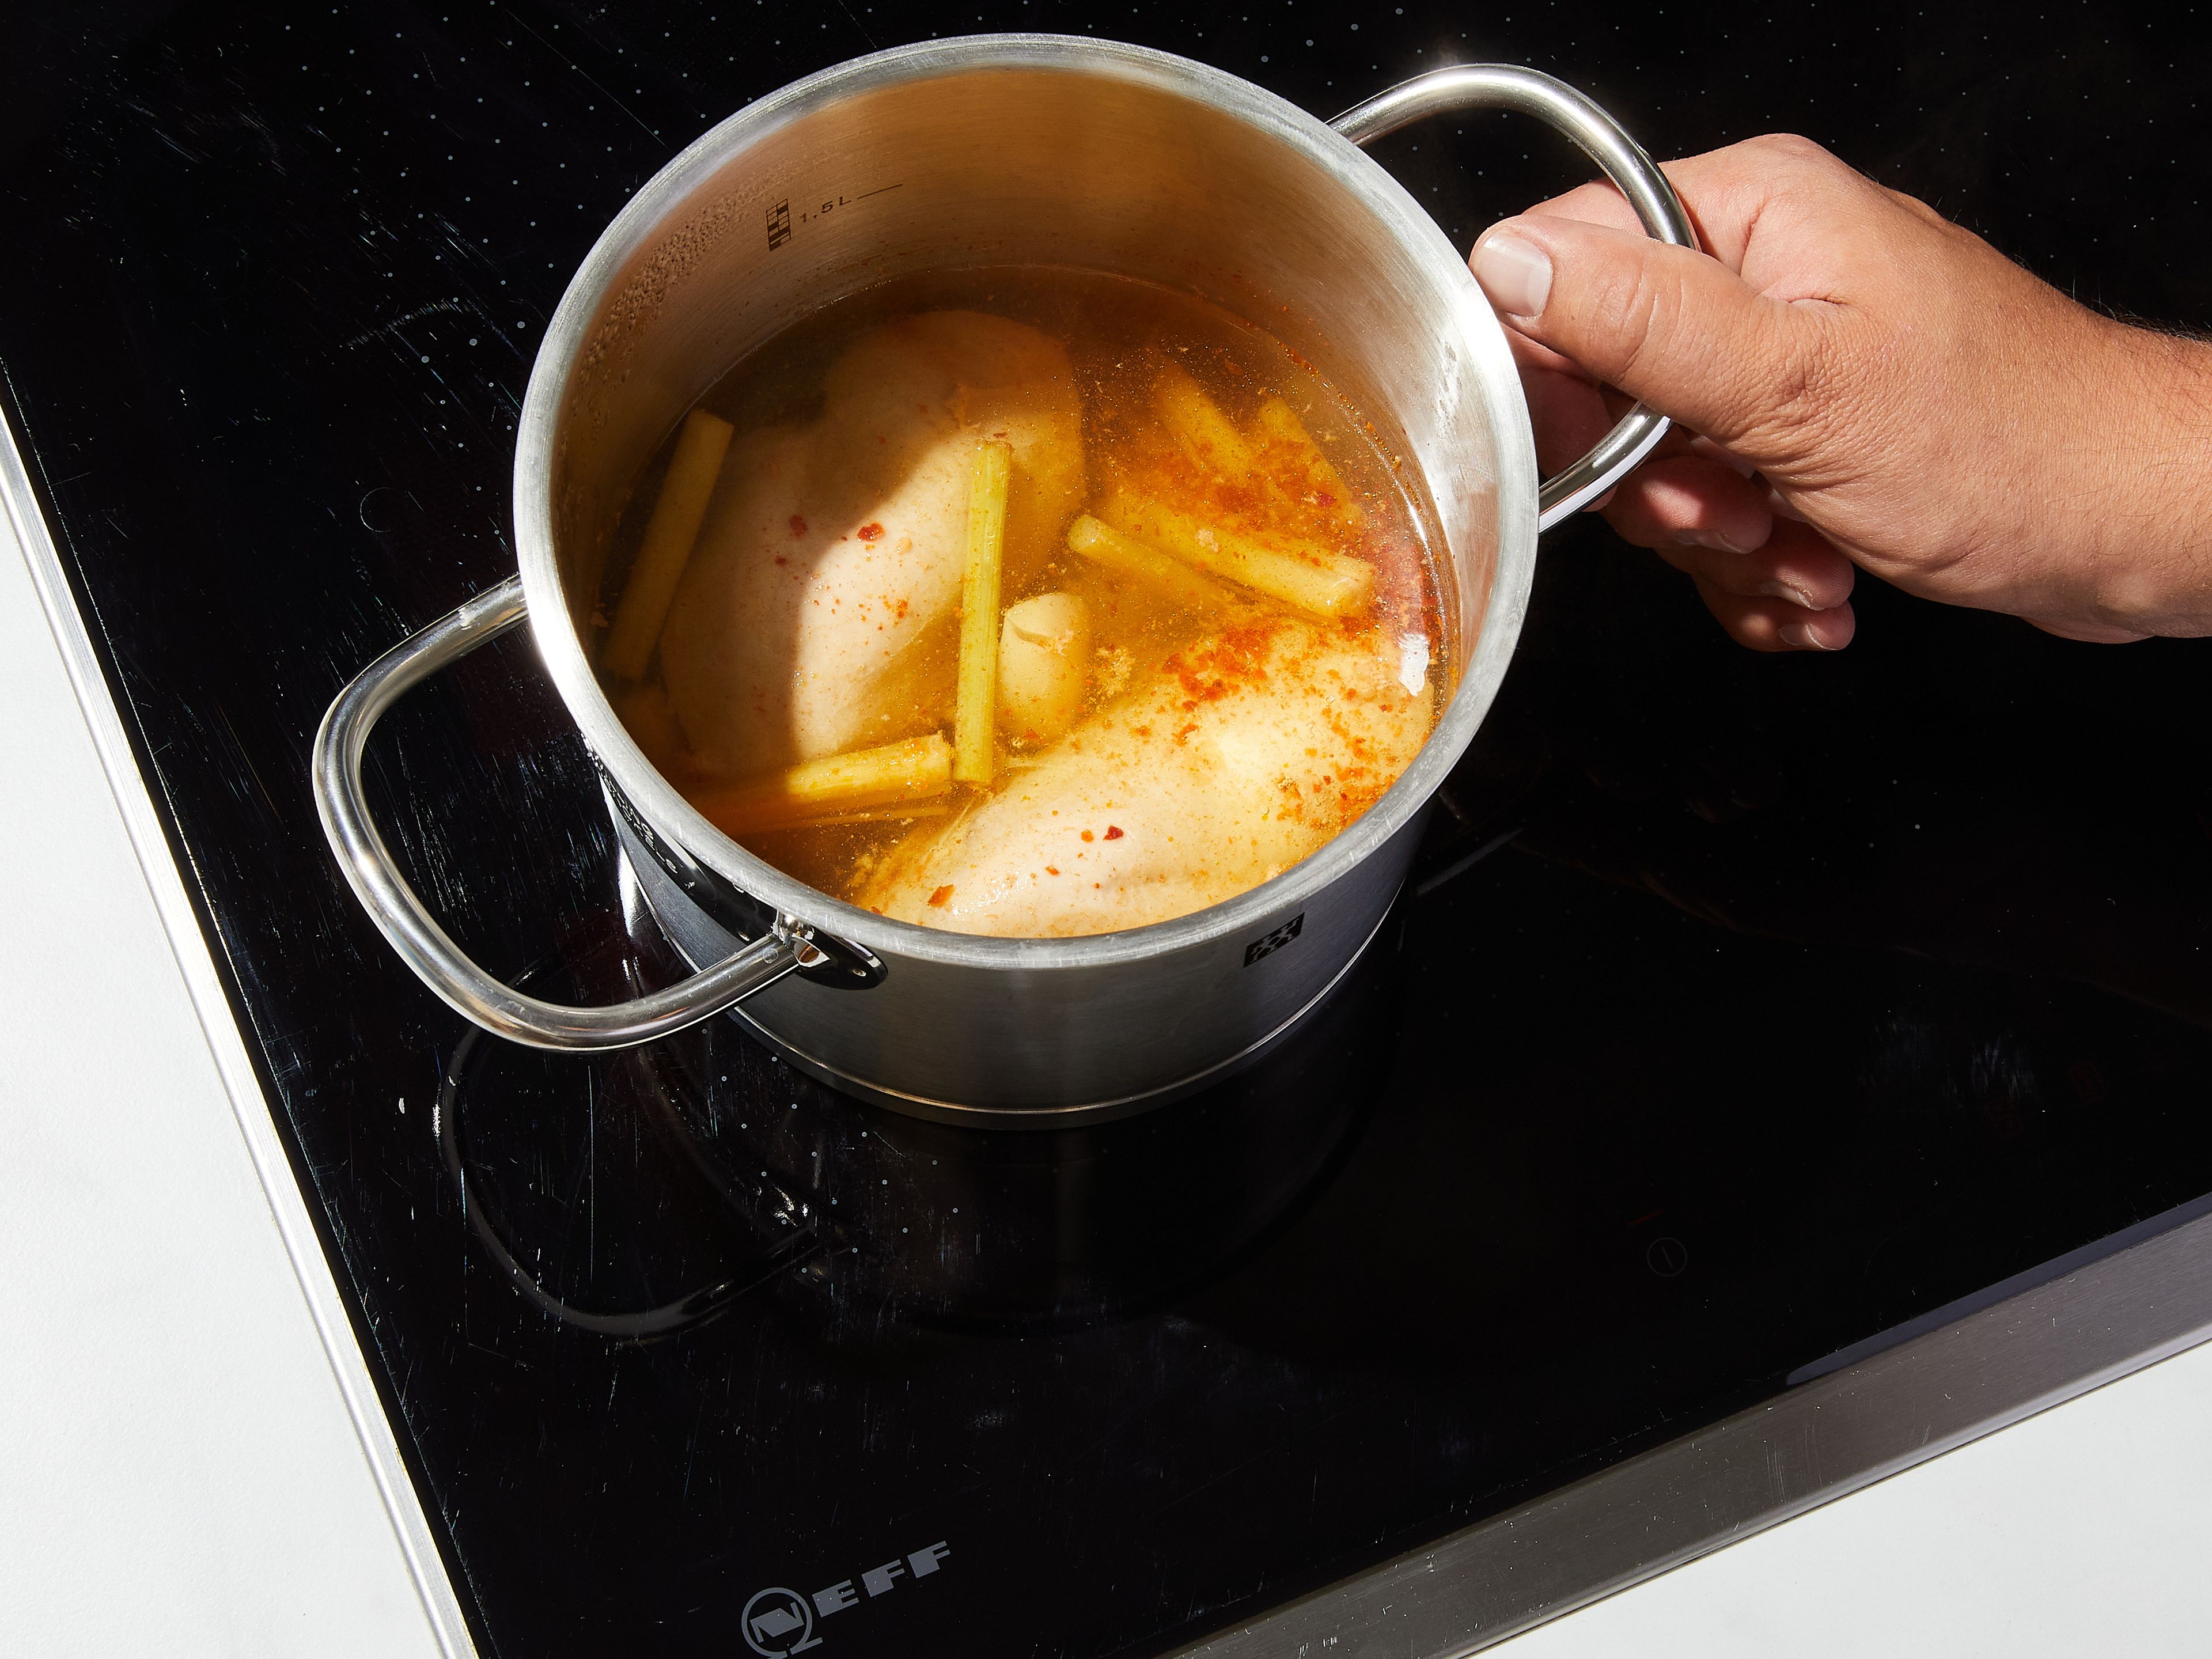 2 Stangen Zitronengras weichklopfen und in 3 cm lange Stücke schneiden. Wasser, Salz, Chiliflocken, die Hälfte des Knoblauchs, Zitronengras und das Hähnchen in einen Topf bei mittlerer Hitze geben. Zum Kochen bringen und anschließend die Hitze reduzieren. Bei geschlossenem Deckel ca. 20 Min. köcheln lassen, oder bis das Hähnchen gar ist. Das Hähnchen aus dem Topf nehmen und zum Abkühlen beiseite stellen.